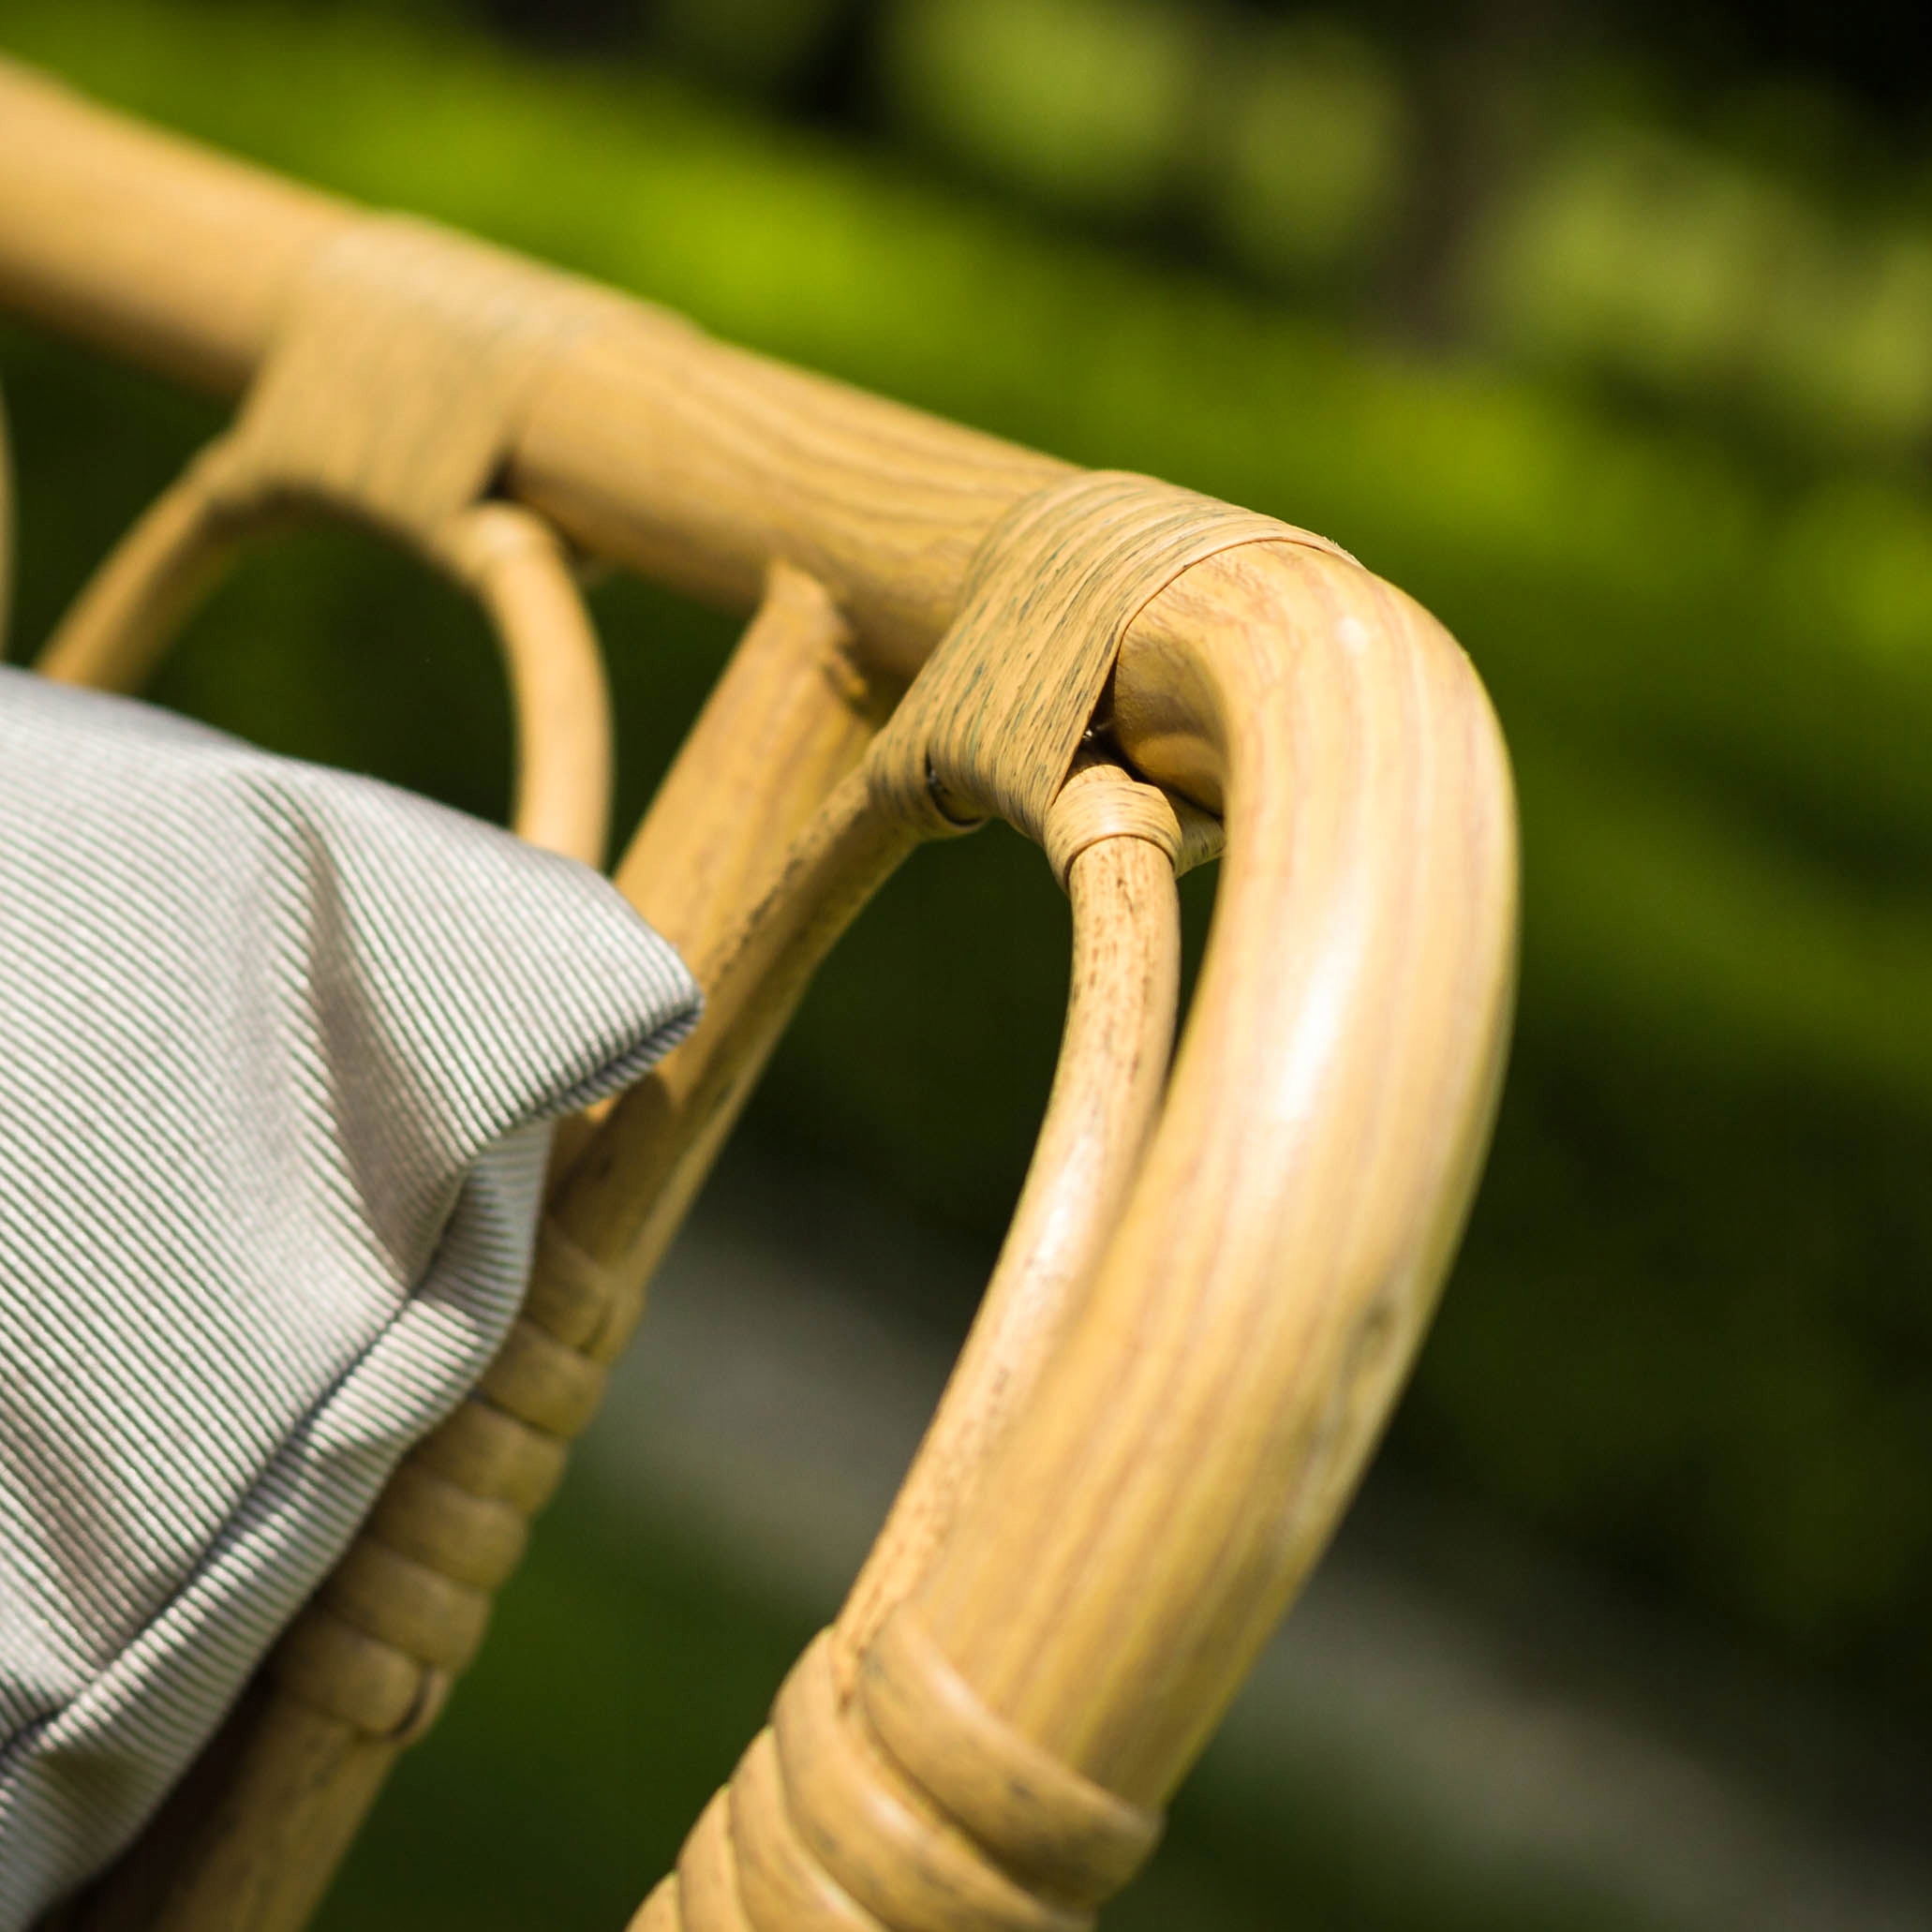 Polyratanový nábytkový set záhradná terasa kreslo sedačka Dominantným materiálom je polyratan